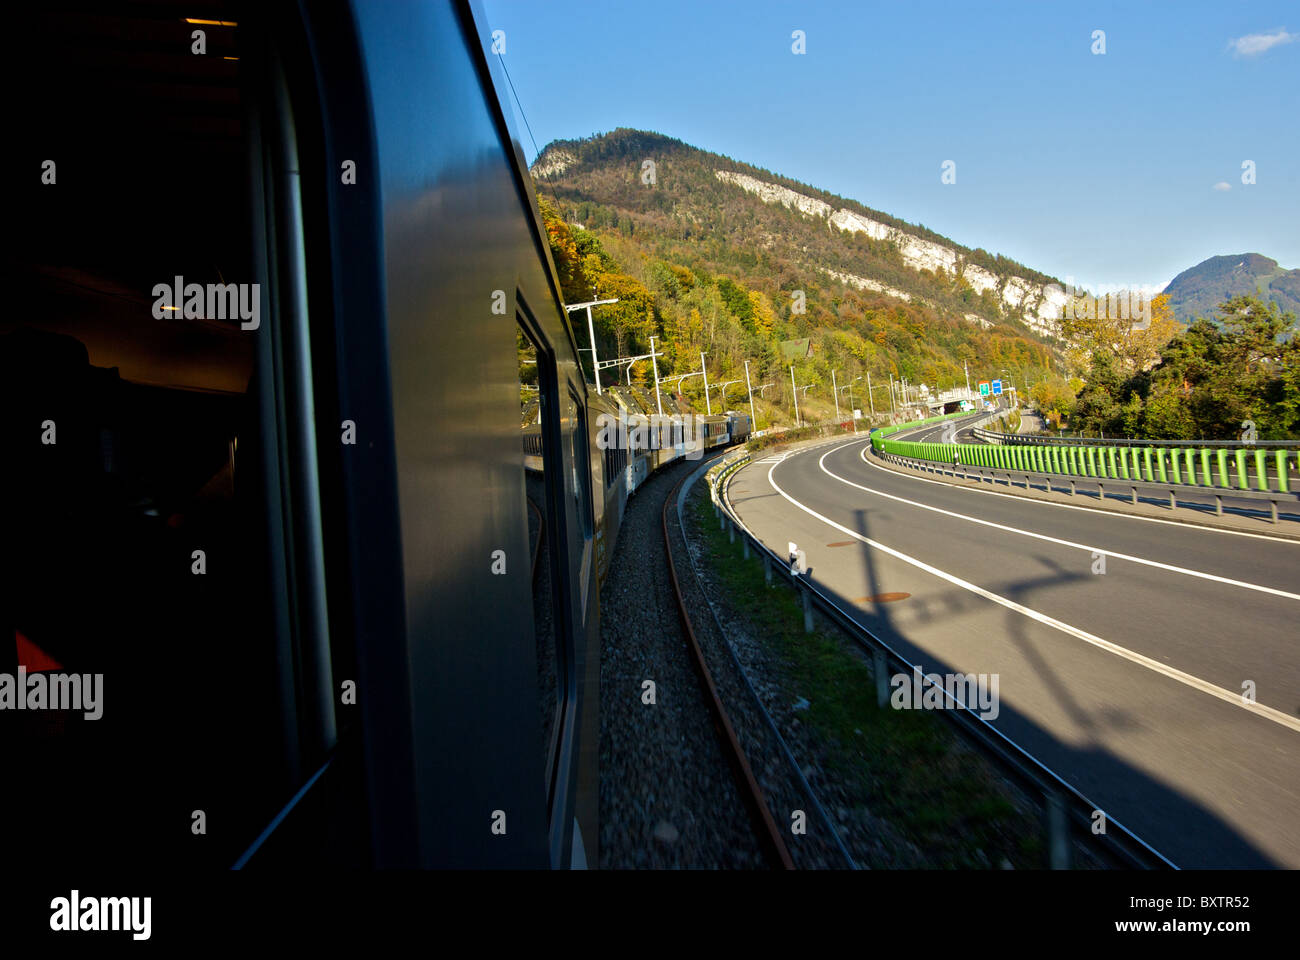 Golden Pass Express Zug Autobahn Landschaft in Bewegung Unschärfe kommen in Luzern Schweiz neben Autobahn Stockfoto